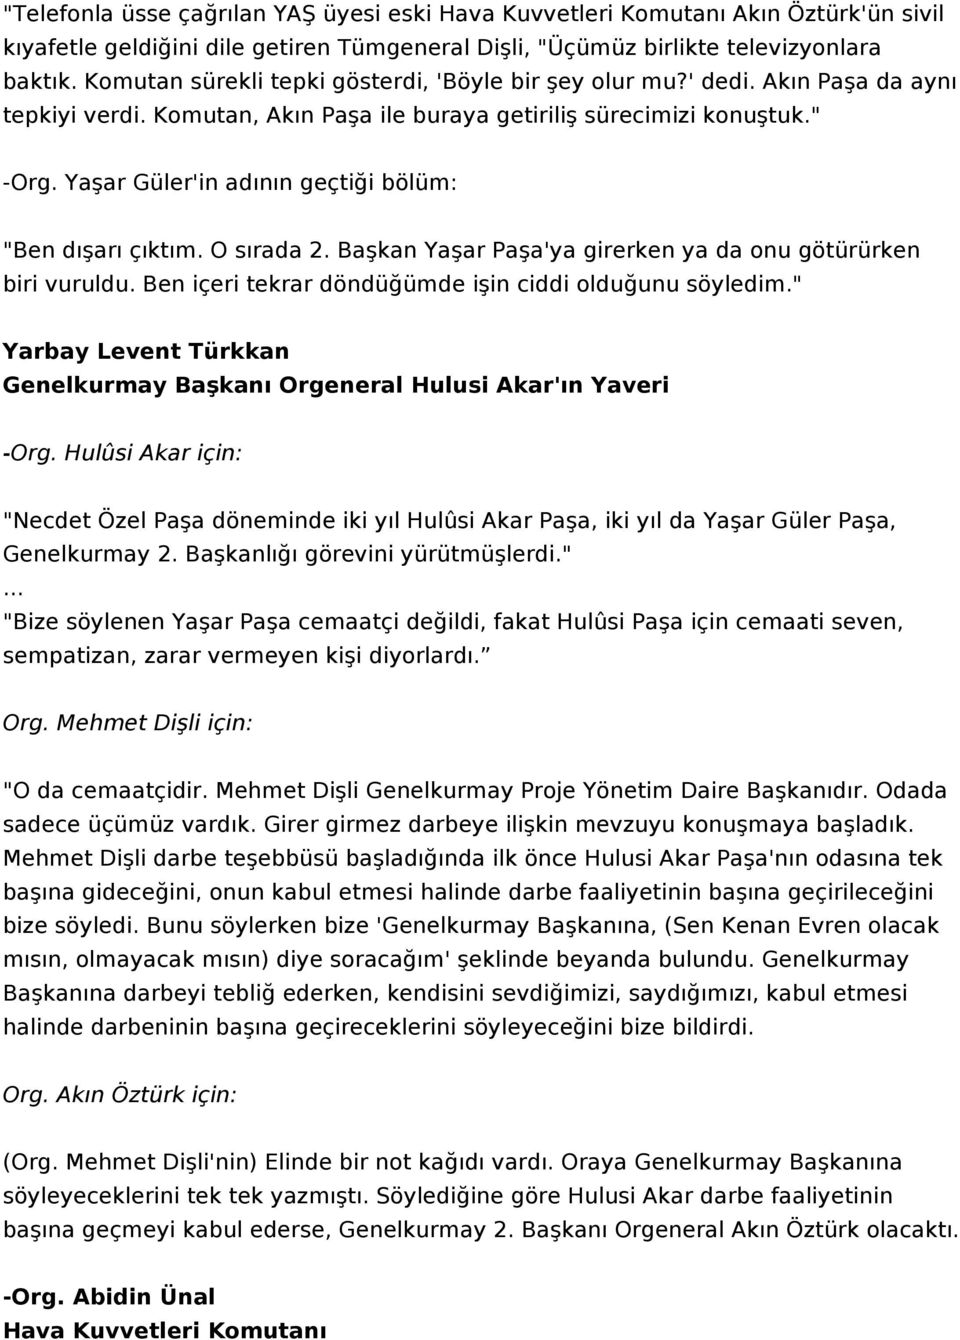 Yaşar Güler'in adının geçtiği bölüm: "Ben dışarı çıktım. O sırada 2. Başkan Yaşar Paşa'ya girerken ya da onu götürürken biri vuruldu. Ben içeri tekrar döndüğümde işin ciddi olduğunu söyledim.